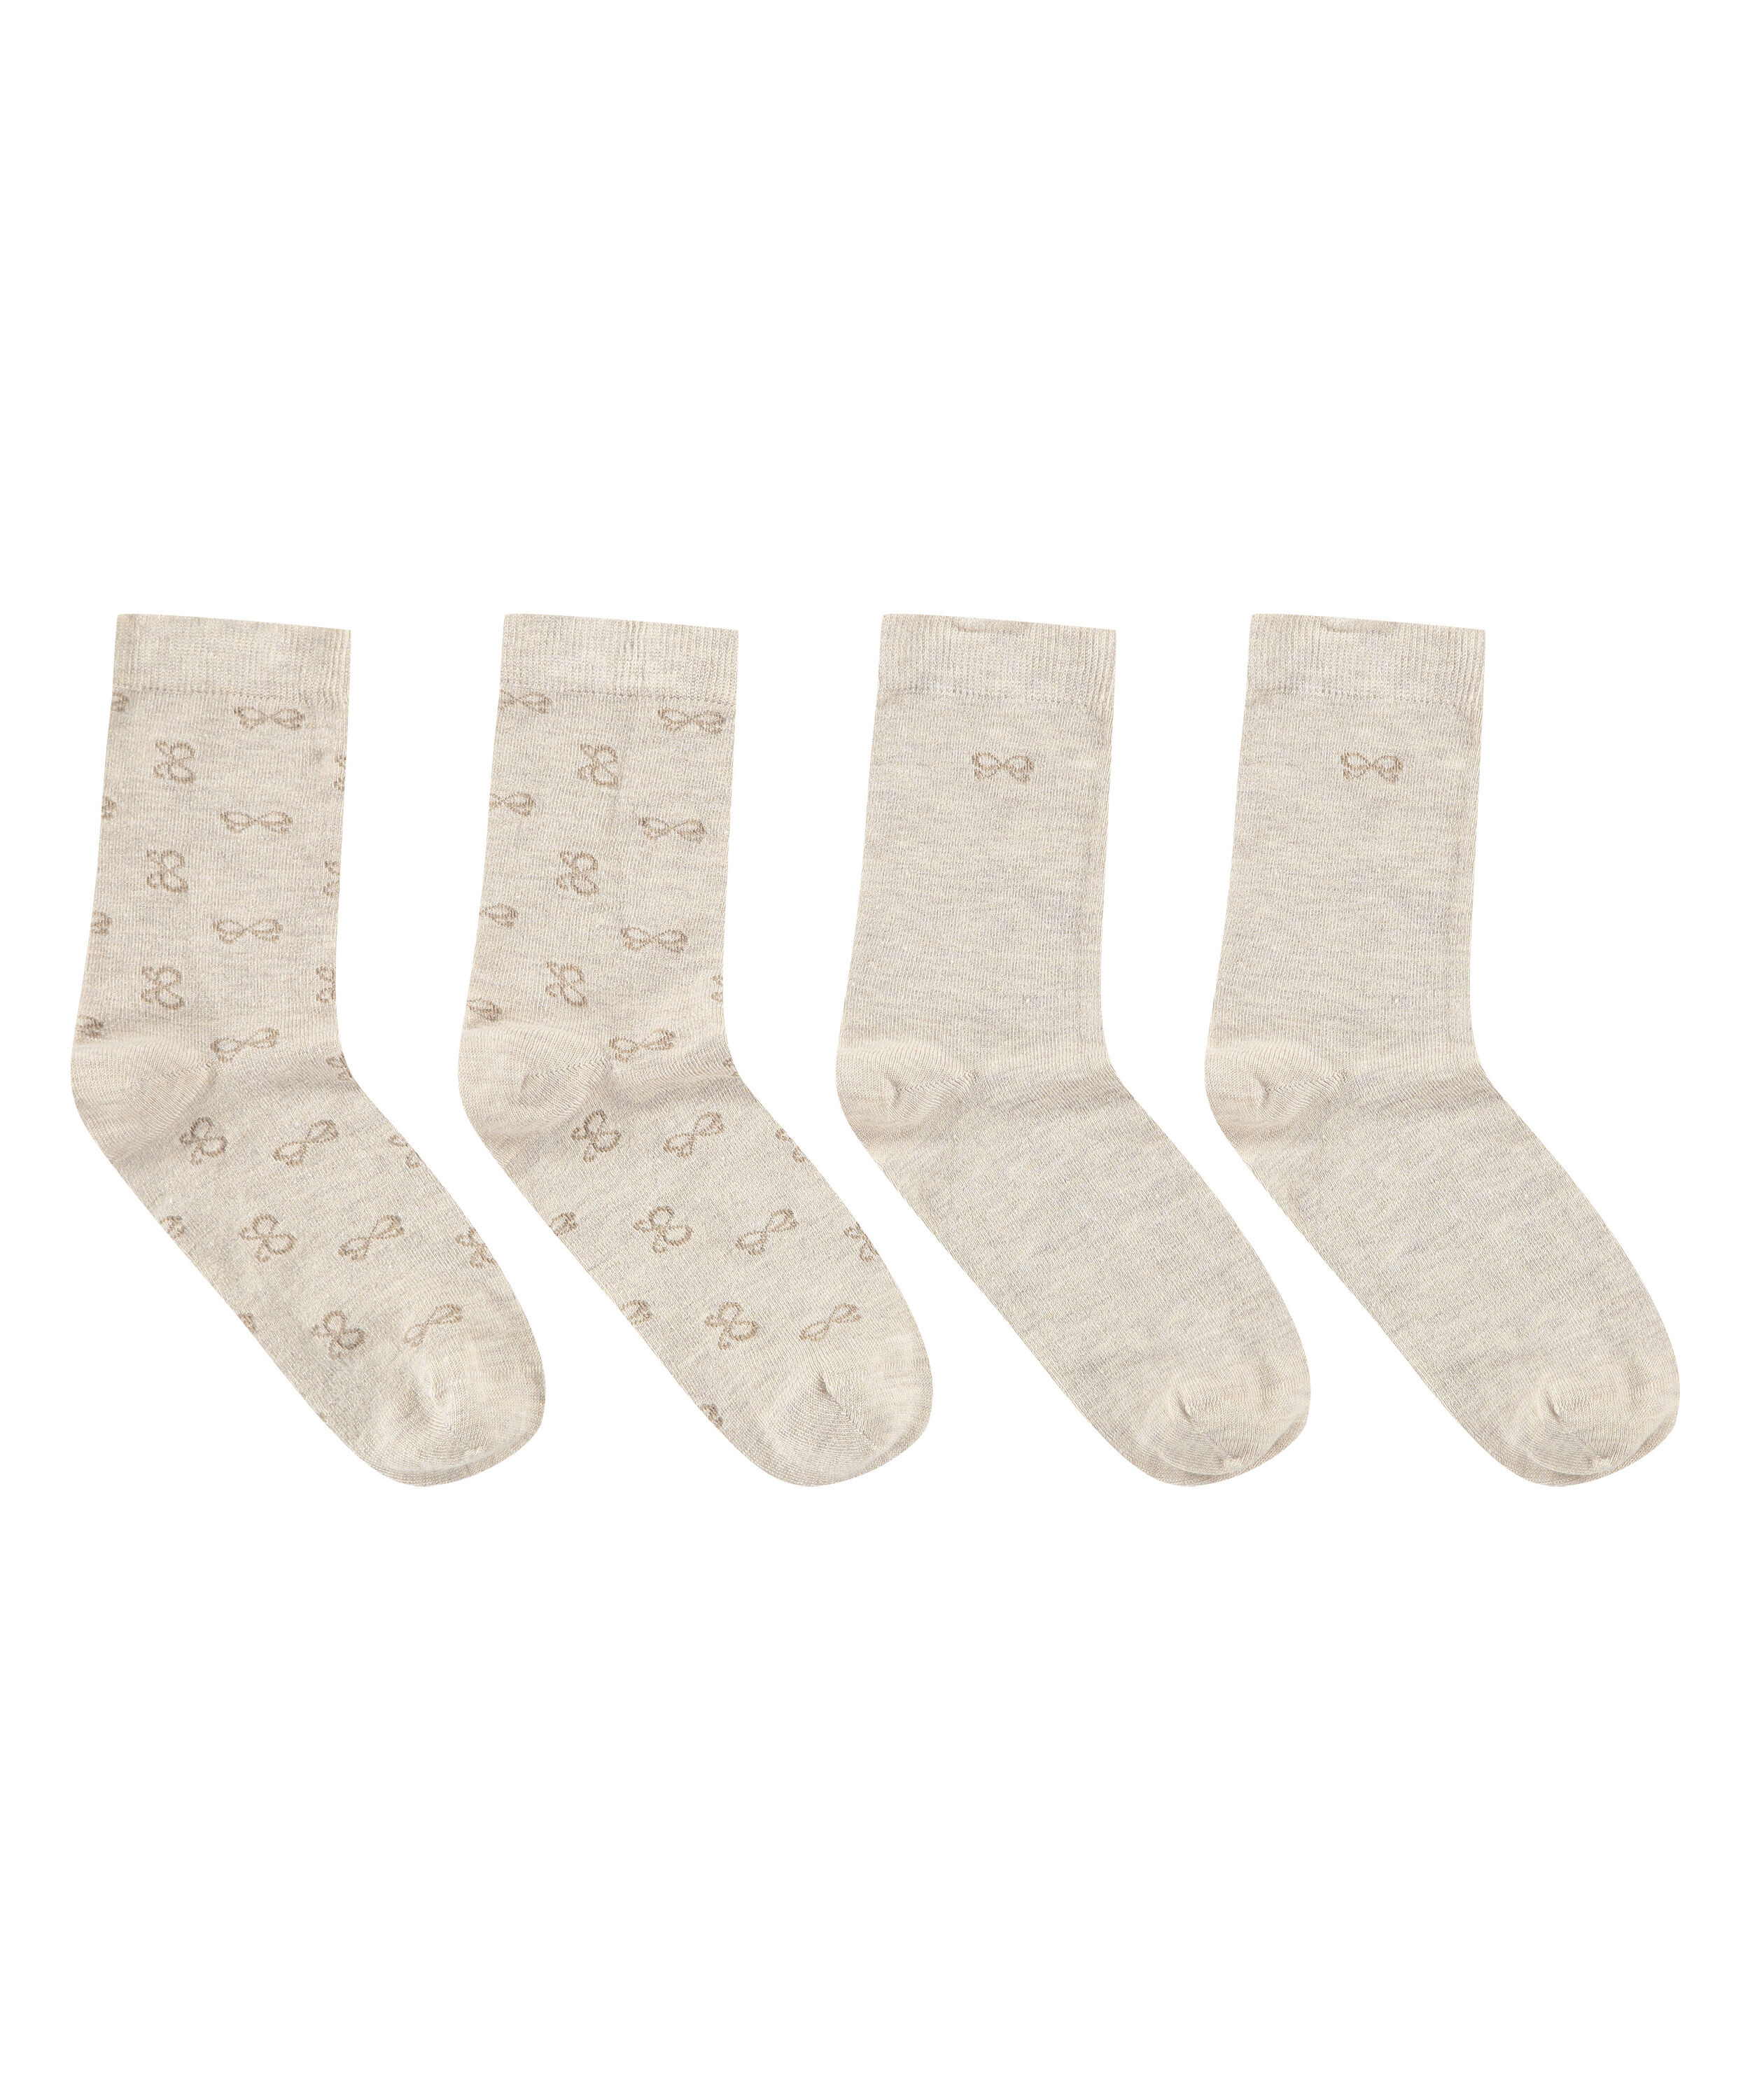 En coton Flashbee Lot de 12 paires de chaussettes antidérapantes pour bébé Couleur claire 